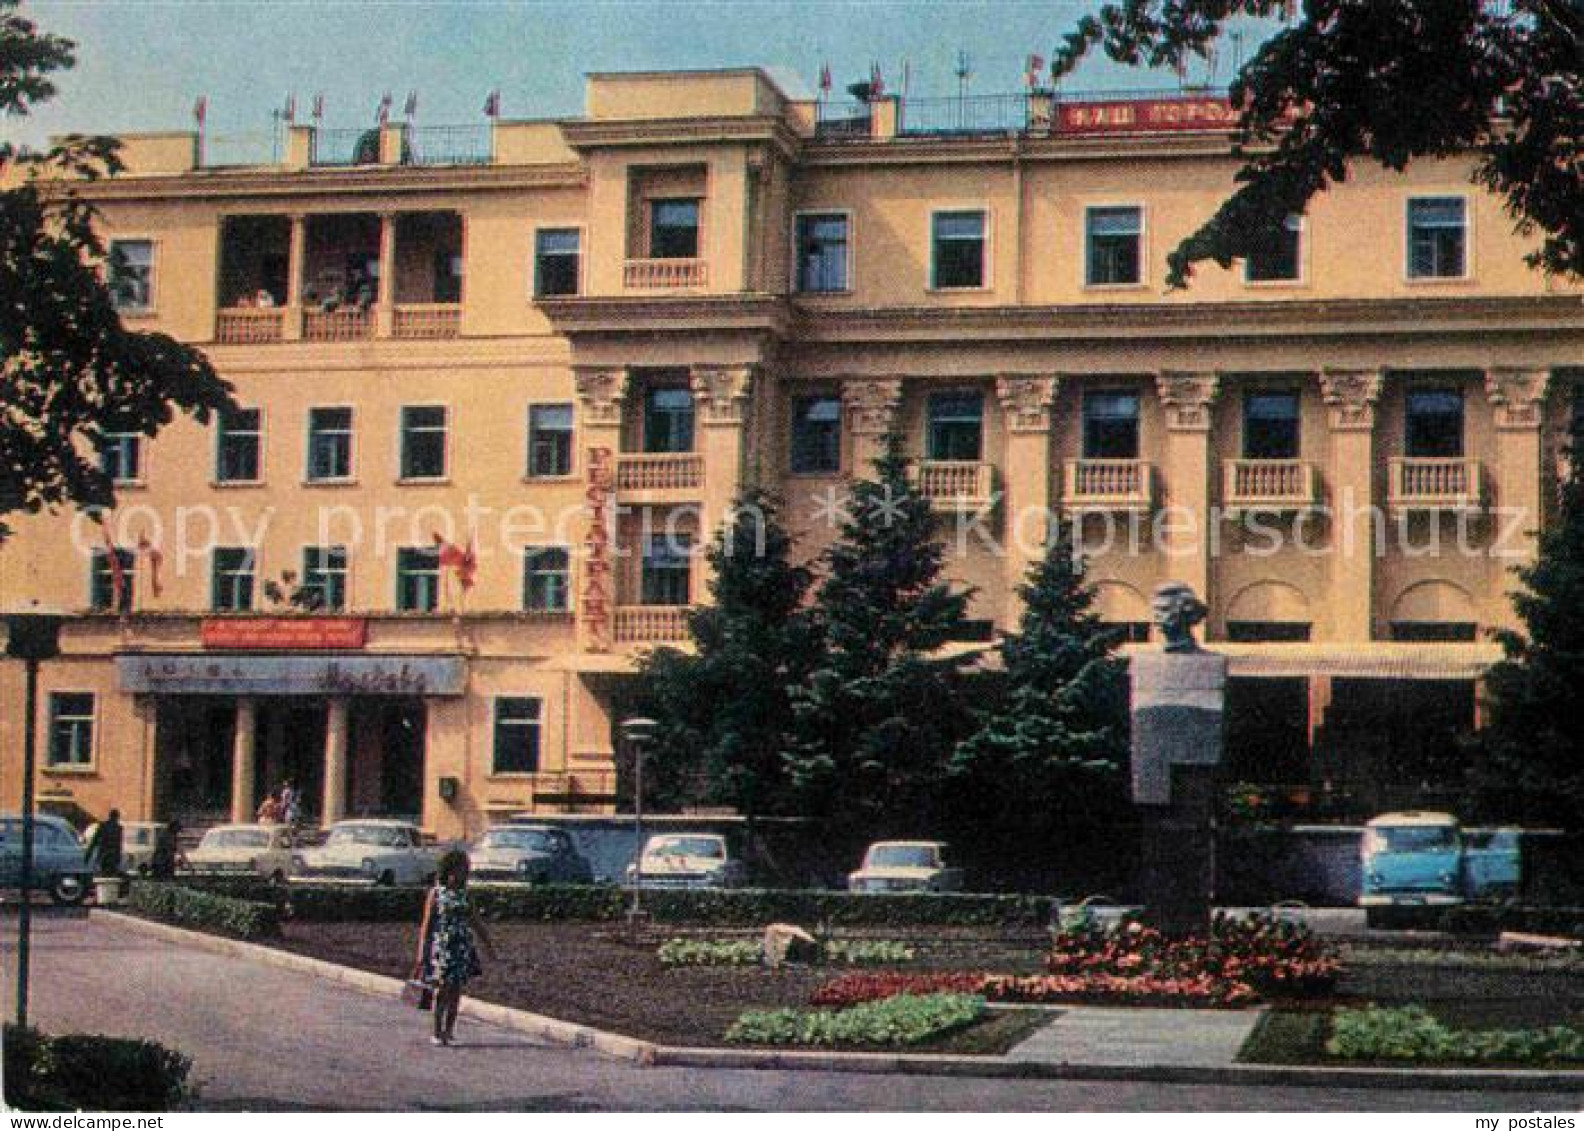 72697936 Kichinev Chisinau Hotel Moldowa  Chisinau - Moldova